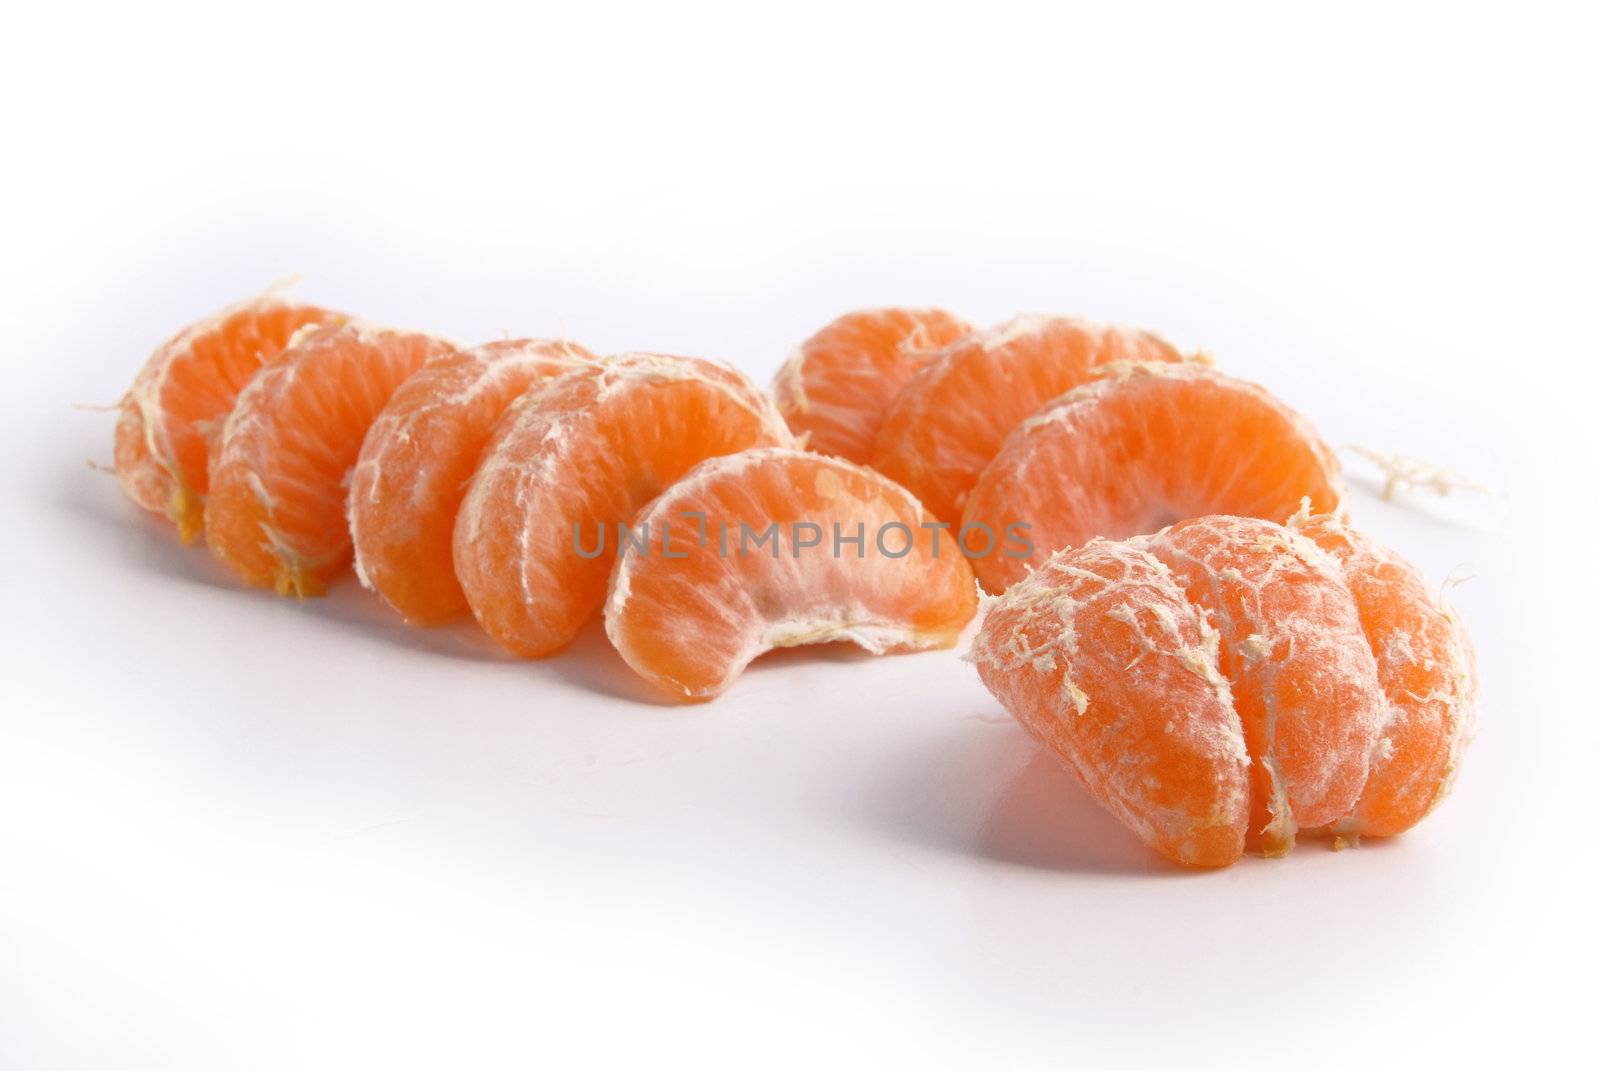 Juicy tangerine slices. Fresh fruit isolated on white background